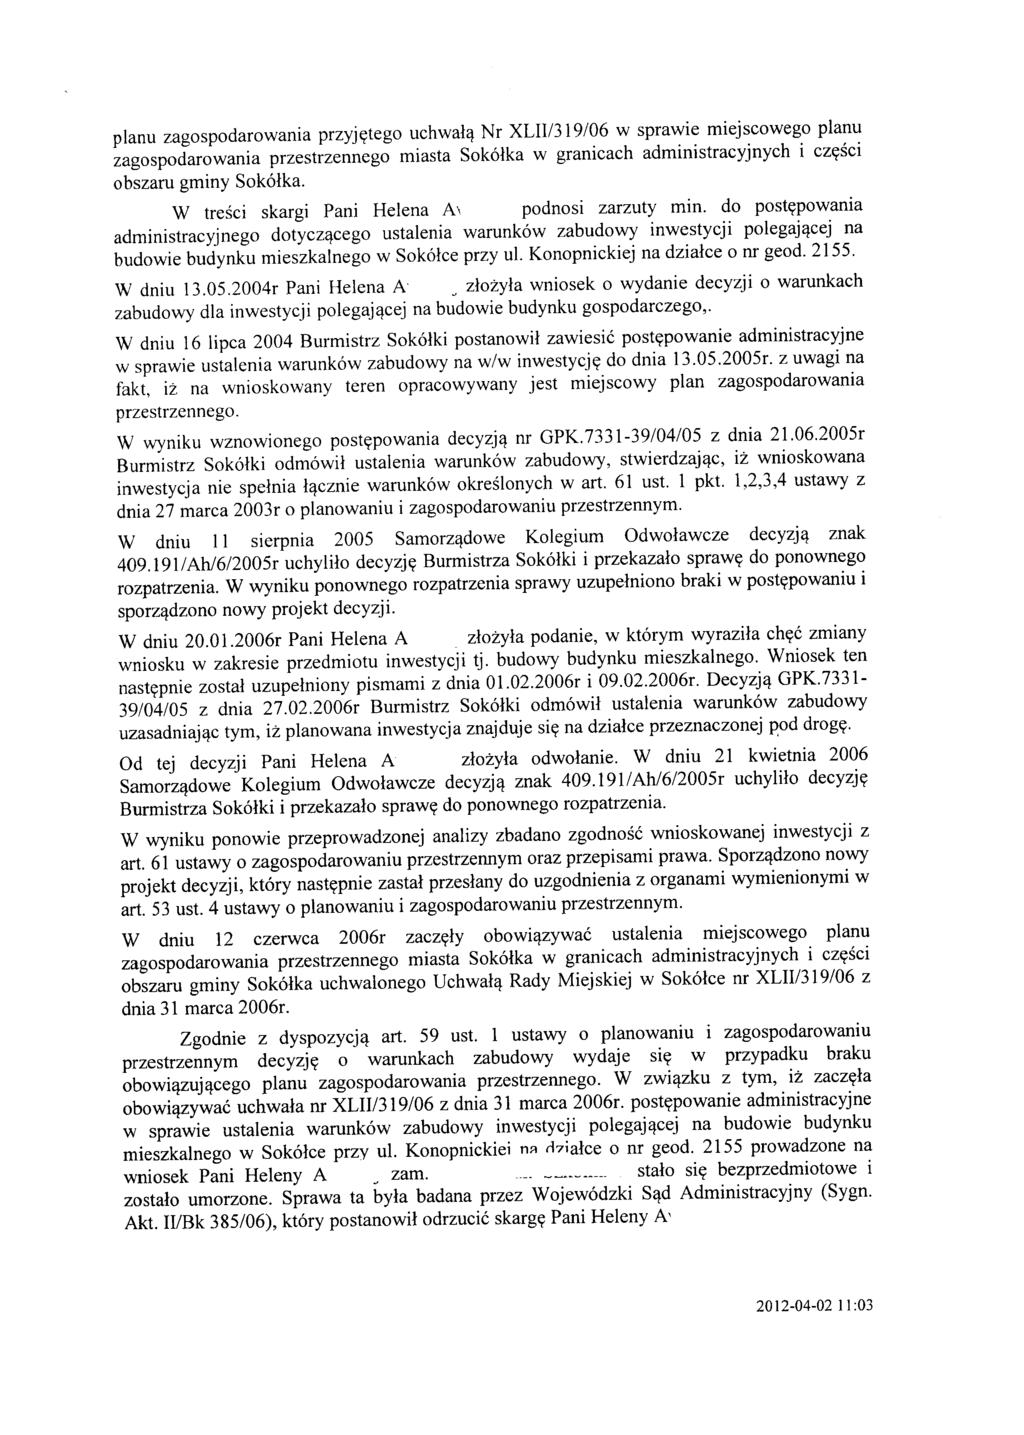 planu zagospodarowania przyjętego uchwałą Nr XLII/319/06 w sprawie miejscowego planu zagospodarowania przestrzennego miasta Sokółka w granicach administracyjnych i części obszaru gminy Sokółka.